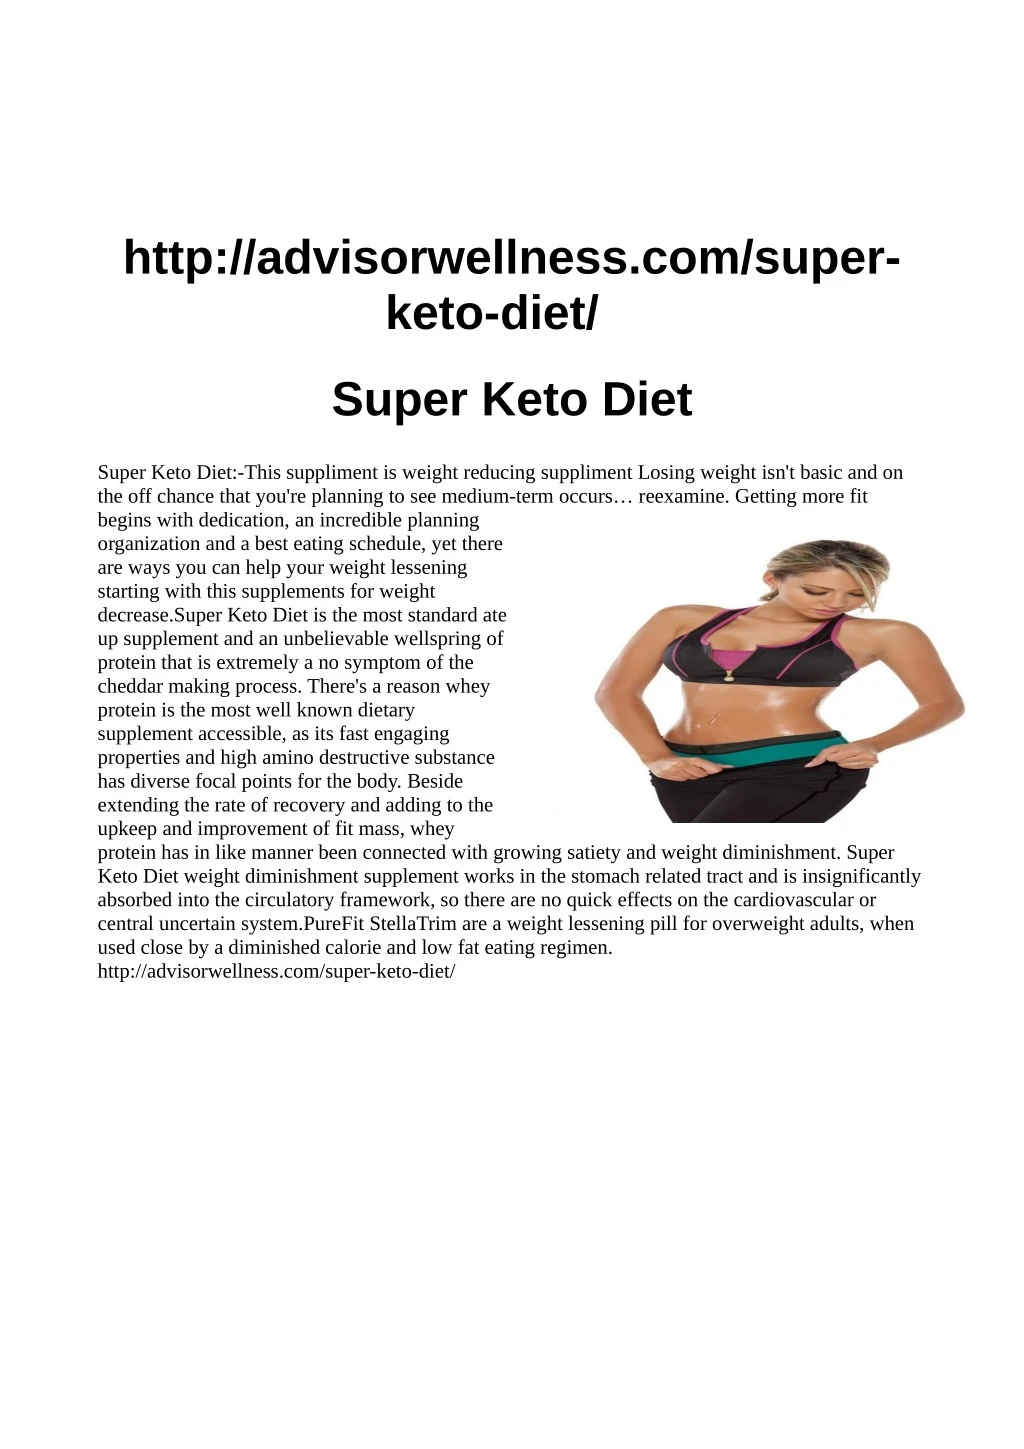 http advisorwellness com super keto diet